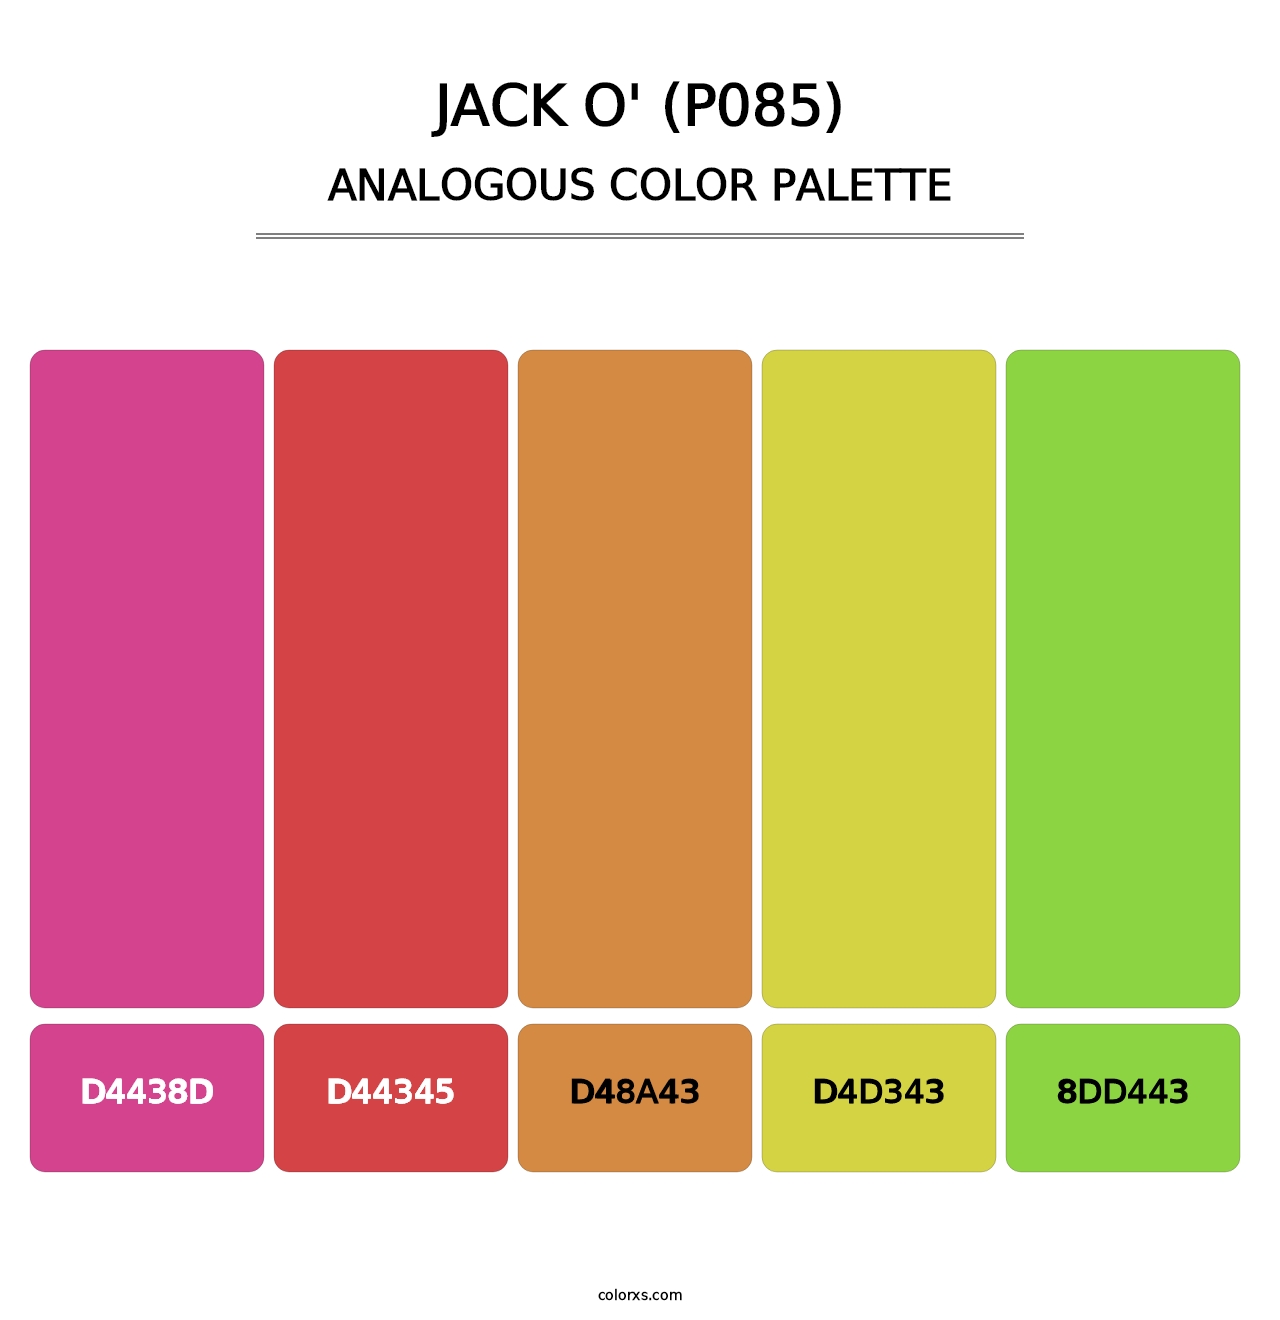 Jack O' (P085) - Analogous Color Palette